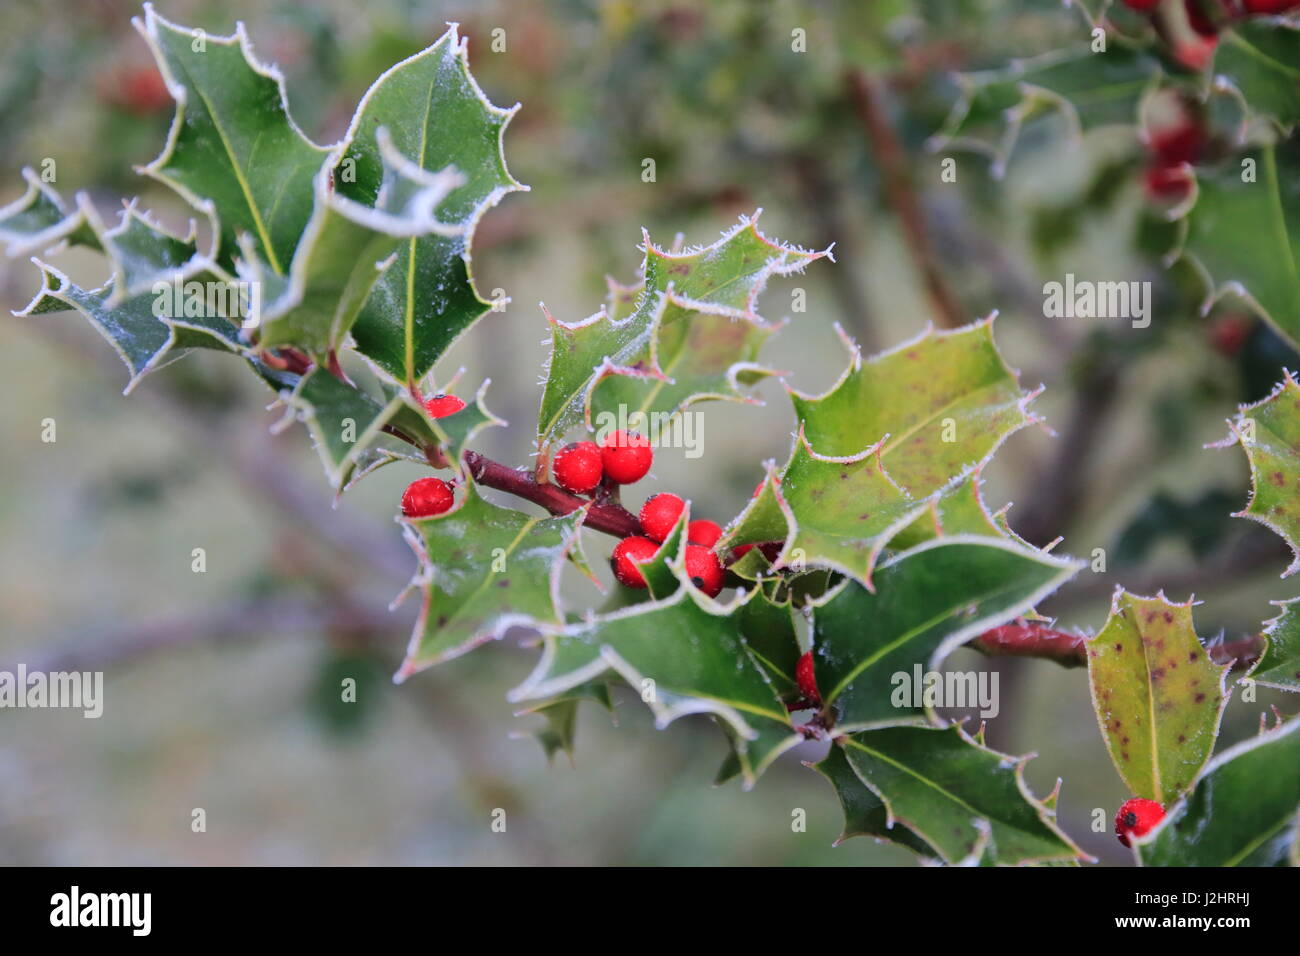 Stechpalme Ilex mit roten Beeren und Rauhreif an den stacheligen Blättern  Stock Photo - Alamy